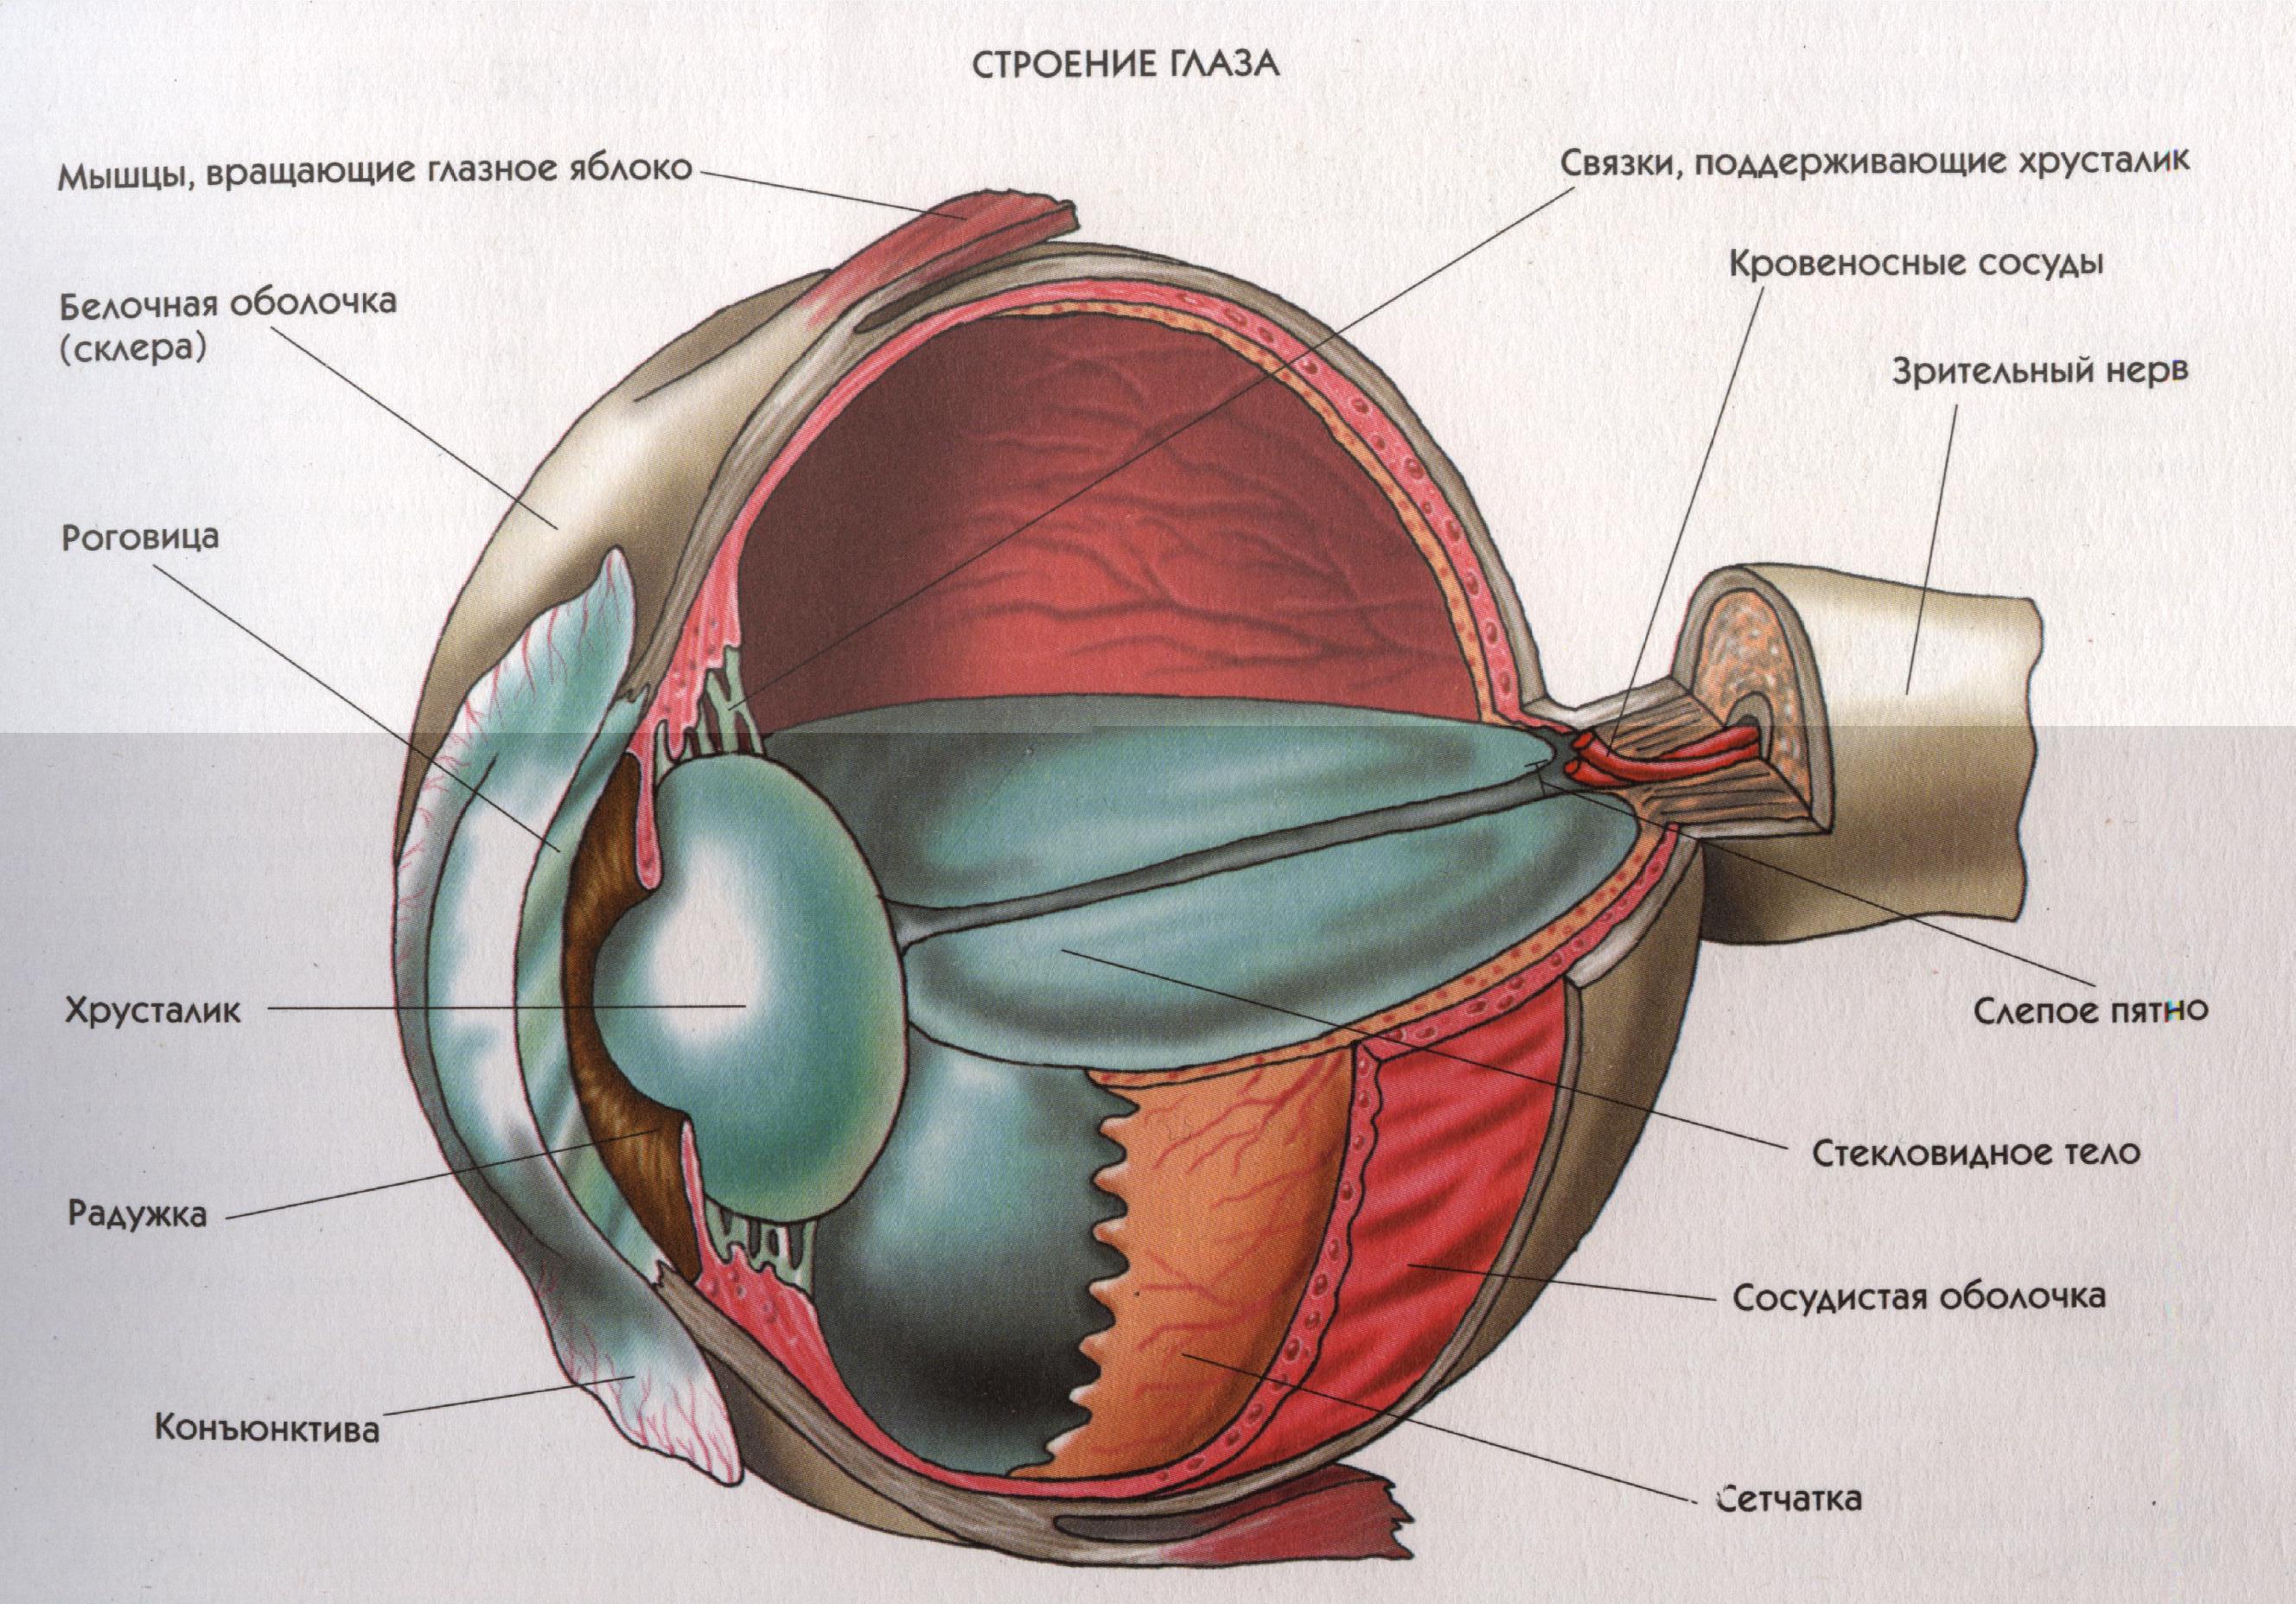 Сетчатка белочная оболочка сосудистая оболочка. Строение глаза человека схема. Строение глаза человека анатомия. Внутреннее строение глаза. Схема строения глазного яблока человека.